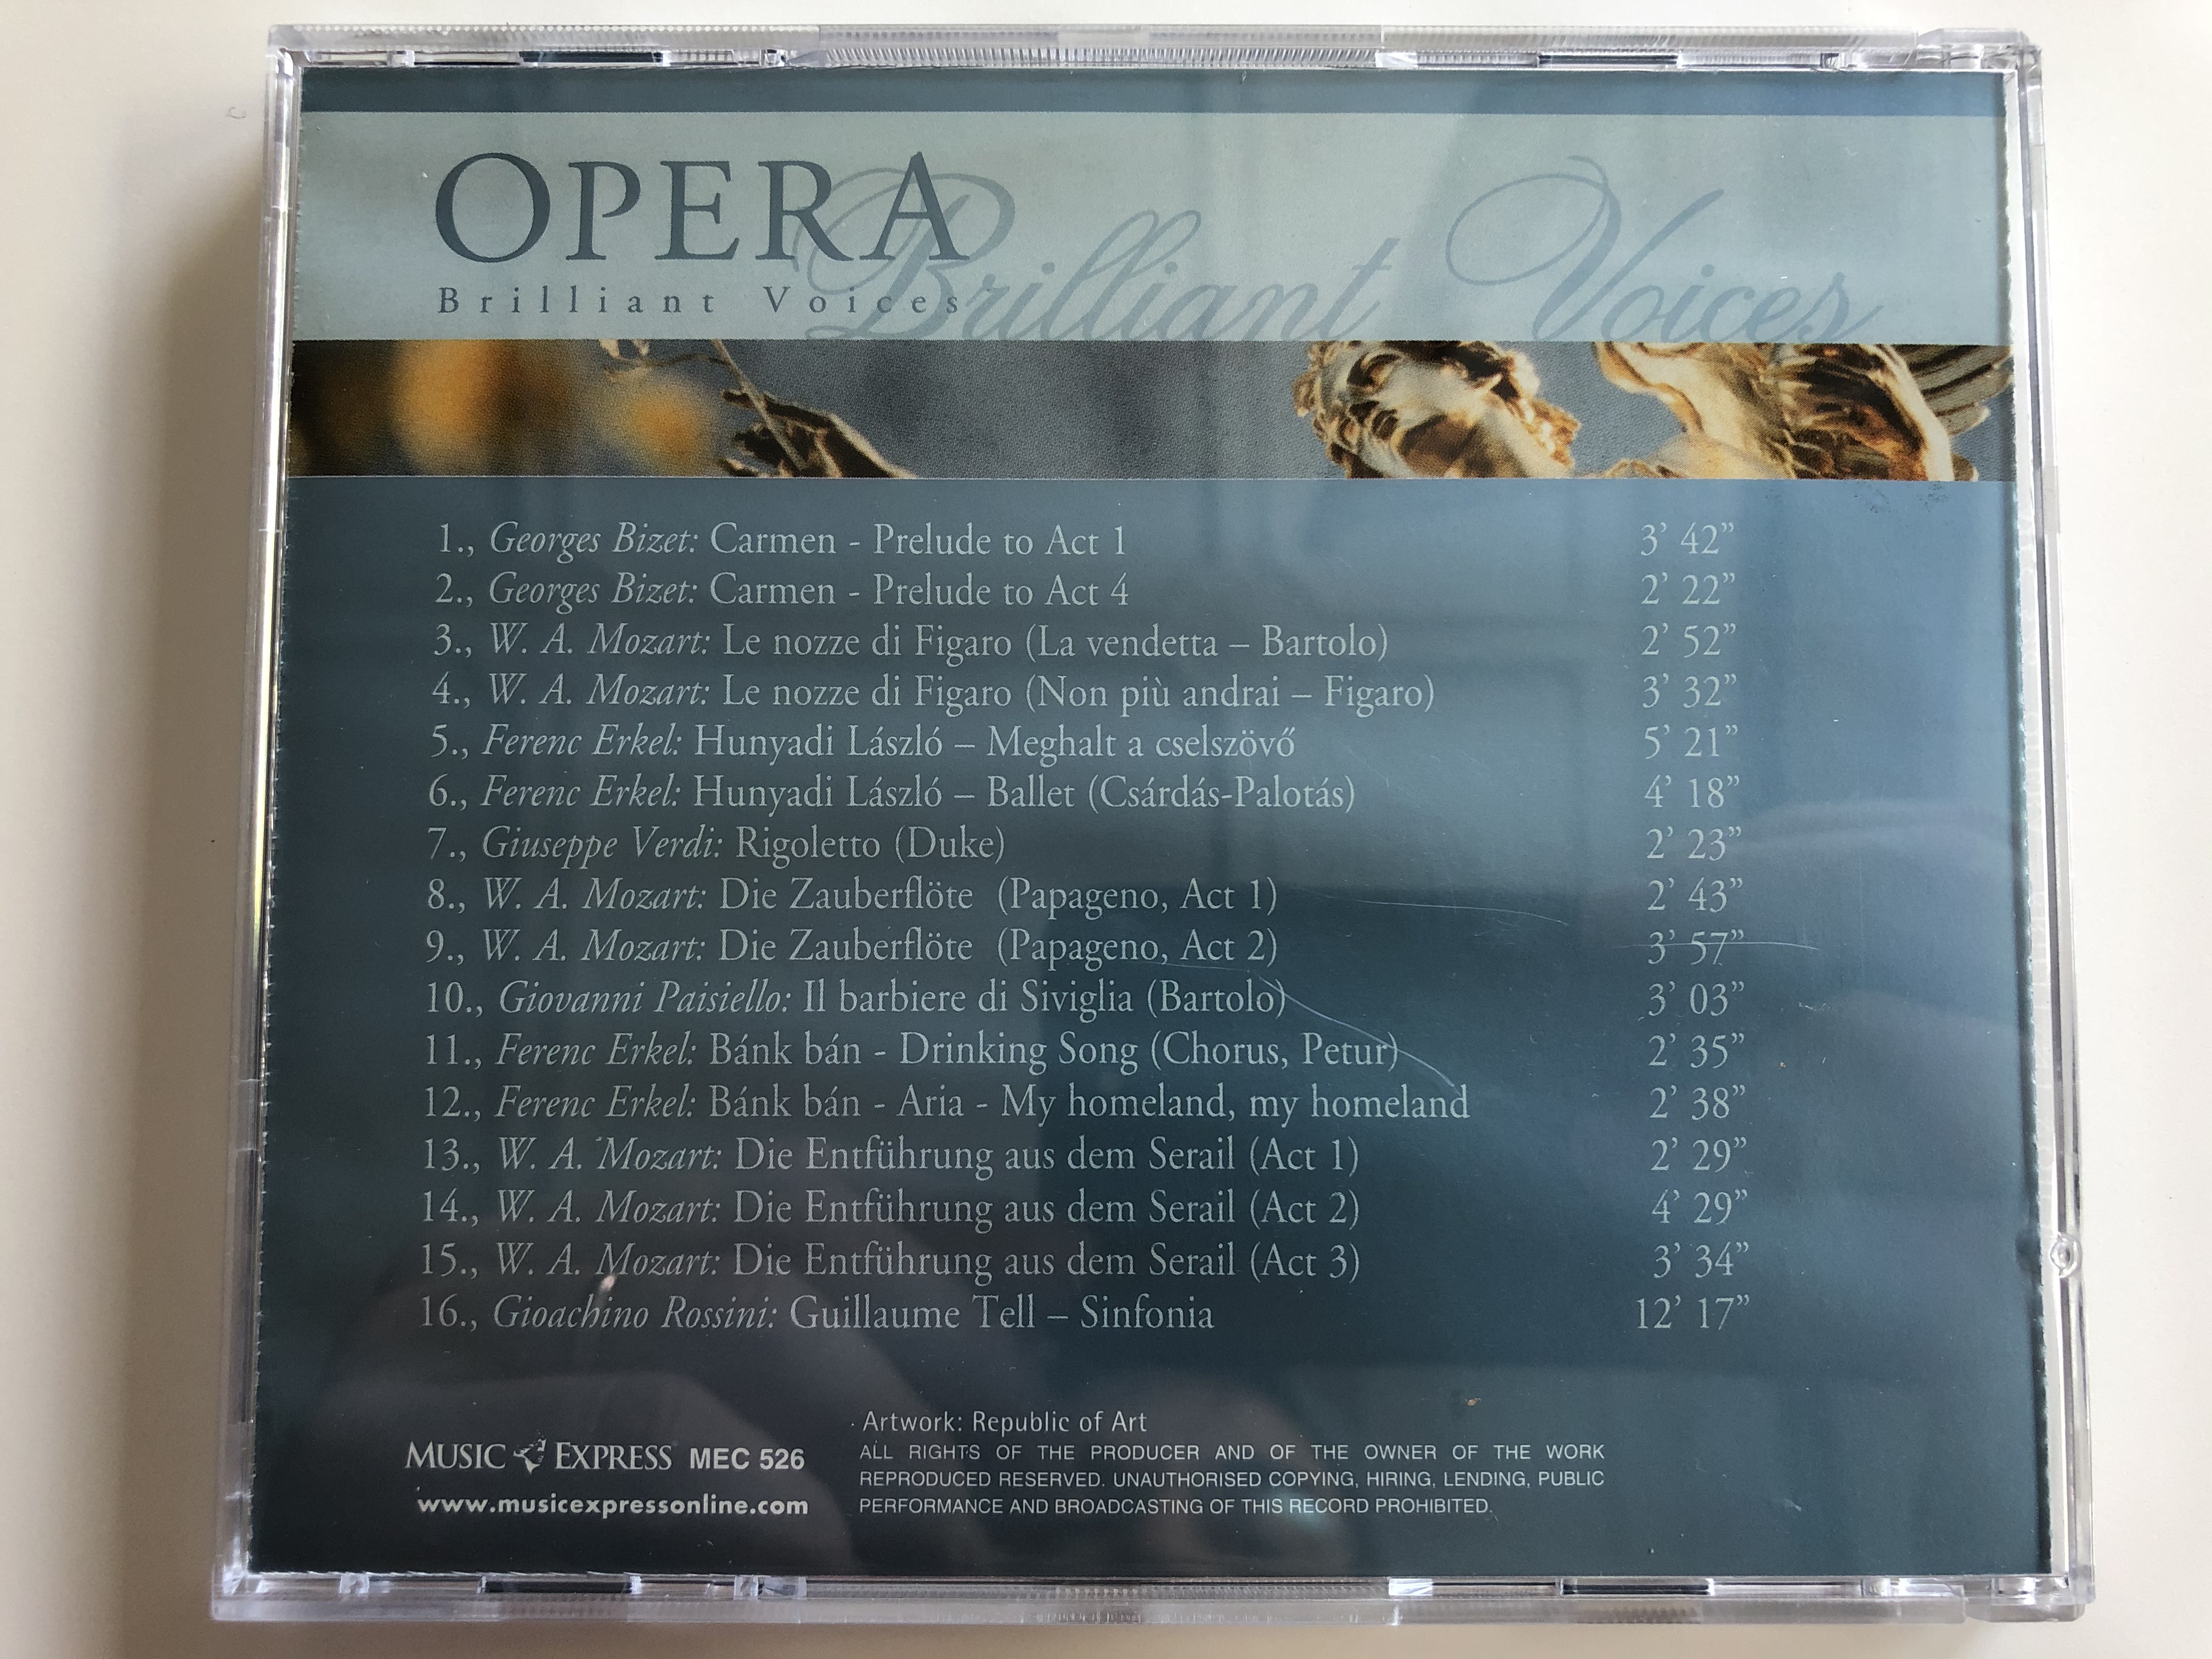 opera-brilliant-voices-music-express-audio-cd-mec-526-6-.jpg